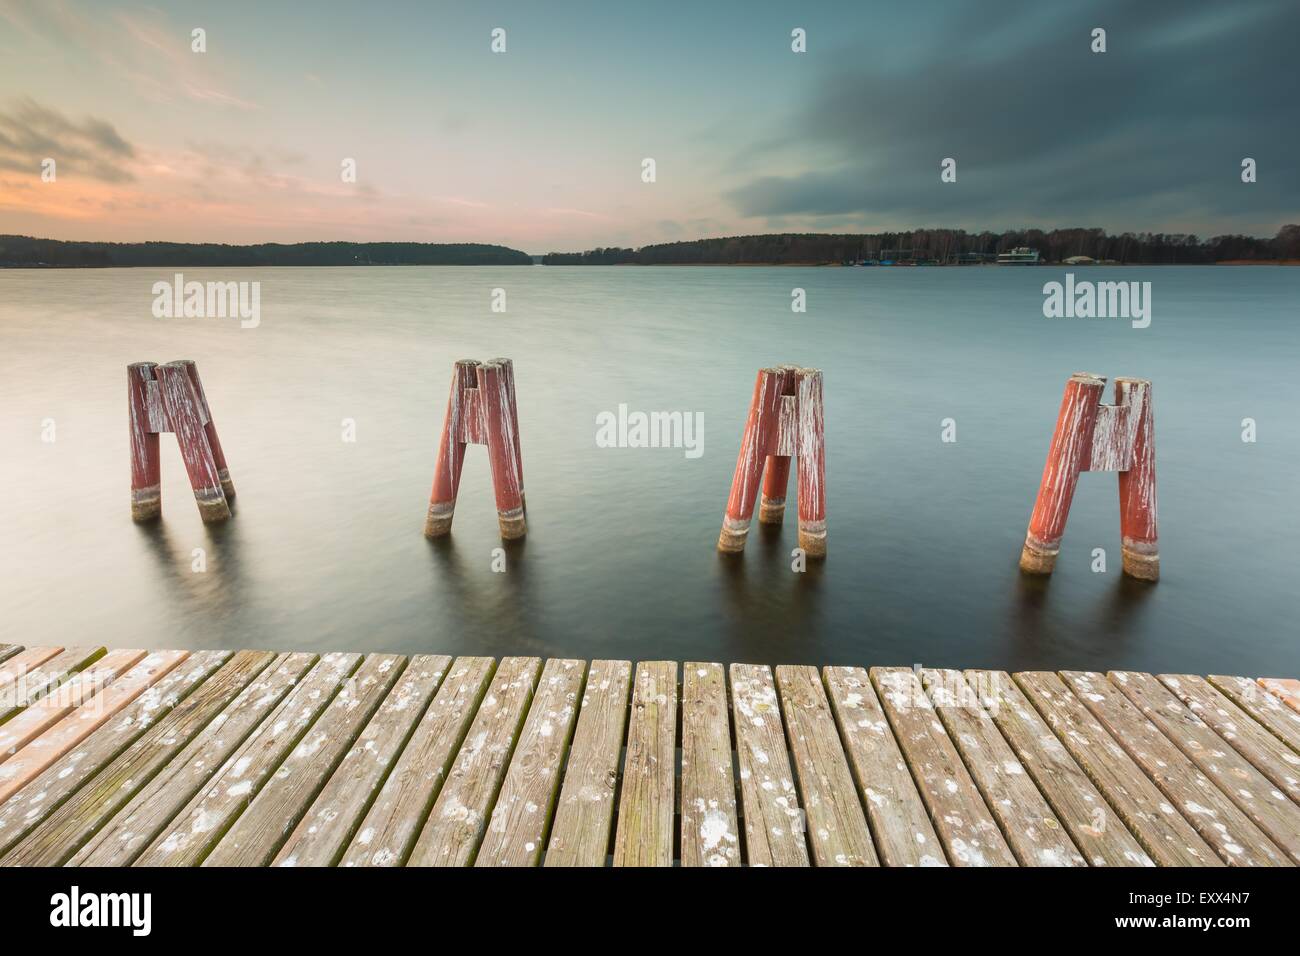 Schöne Seenlandschaft mit Steg. Langzeitbelichtung Fotos mit Filter. Polnische Seeufer bei bewölktem Wetter Sonnenuntergang. Dramatische Stockfoto